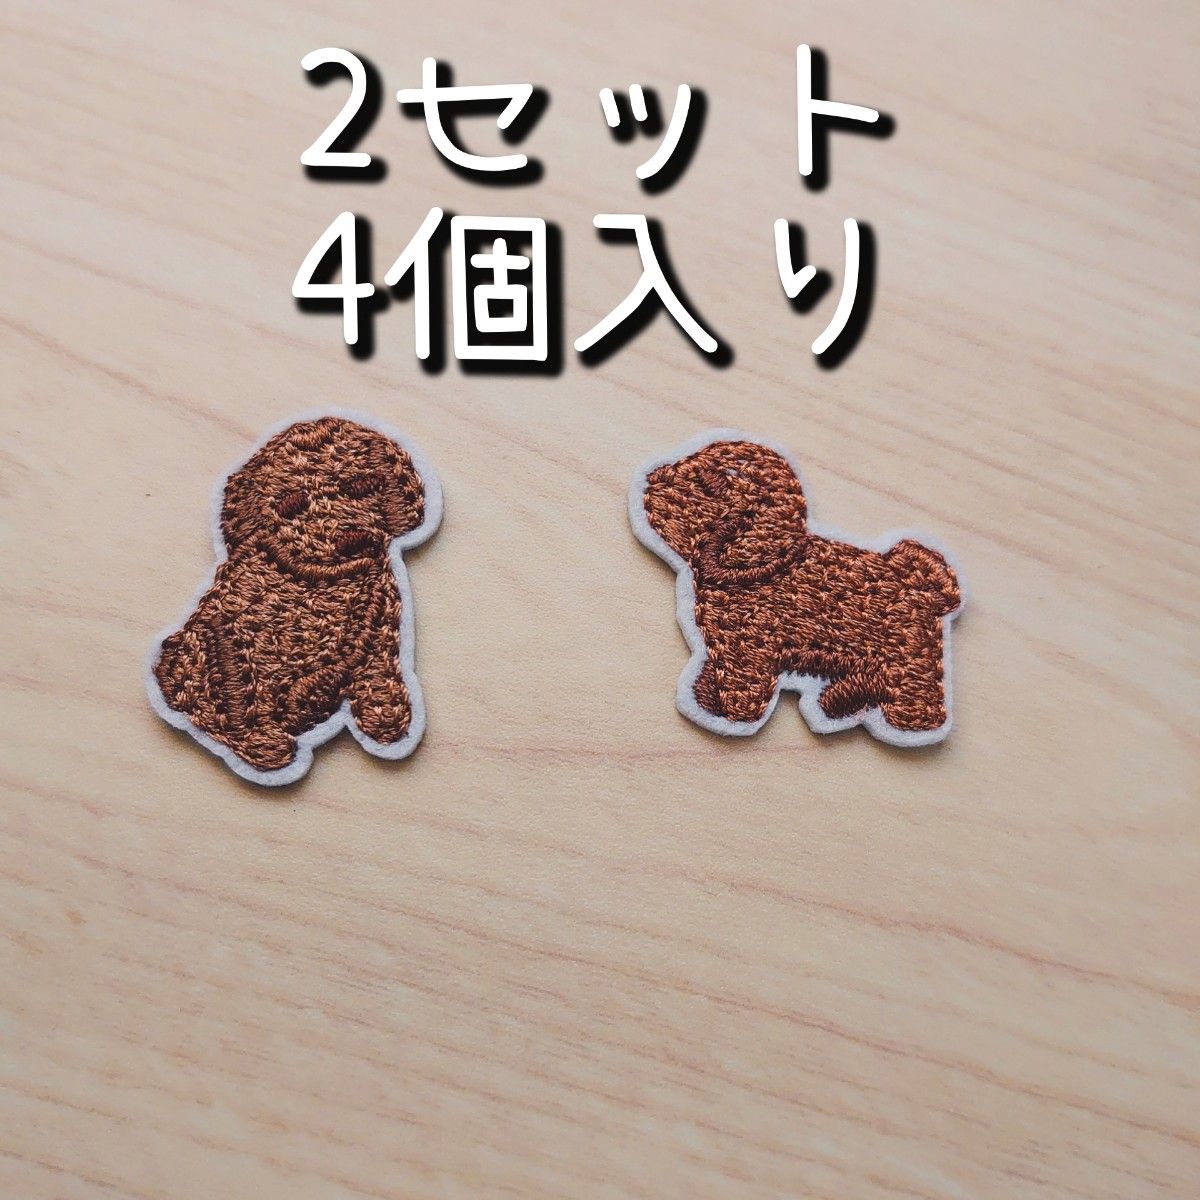 セール☆2セット トイプードル アイロンワッペン 刺繍 犬 ワッペン 新品未使用  アップリケ 犬 ハンドメイドパーツ 新生活 